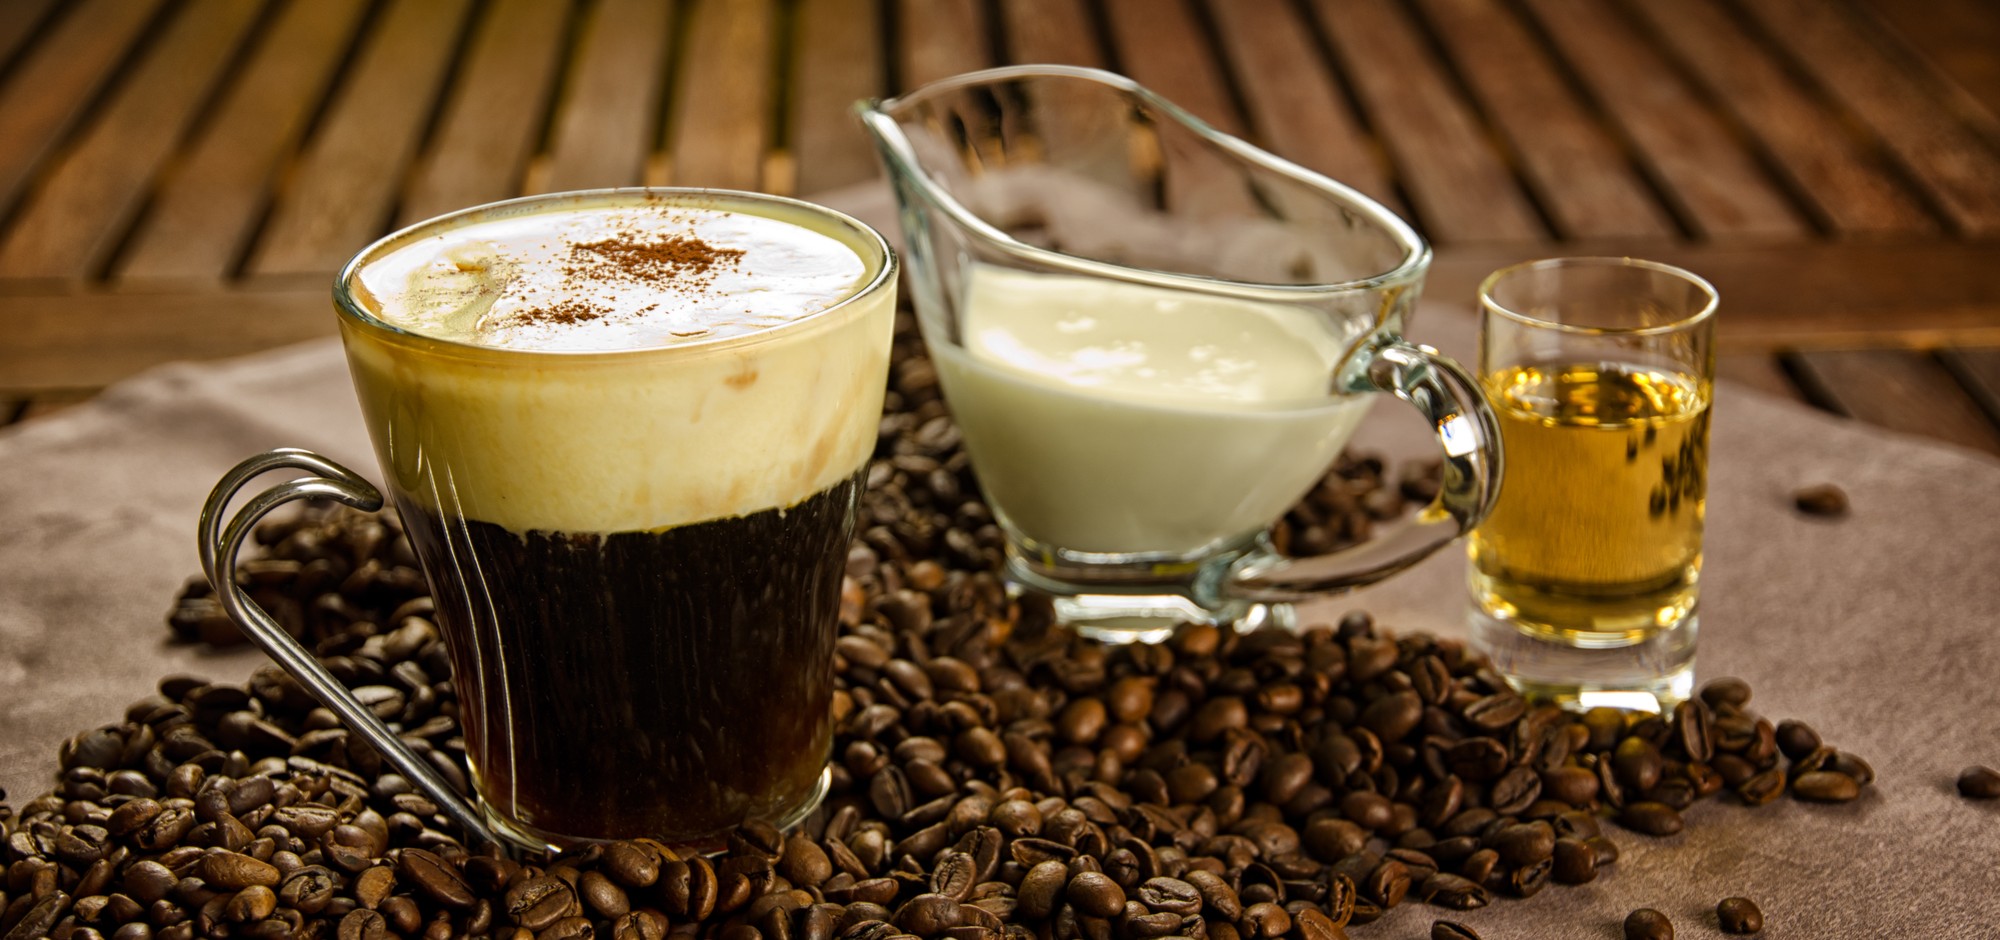 Популярные рецепты кофе с коньяком: как правильно готовить